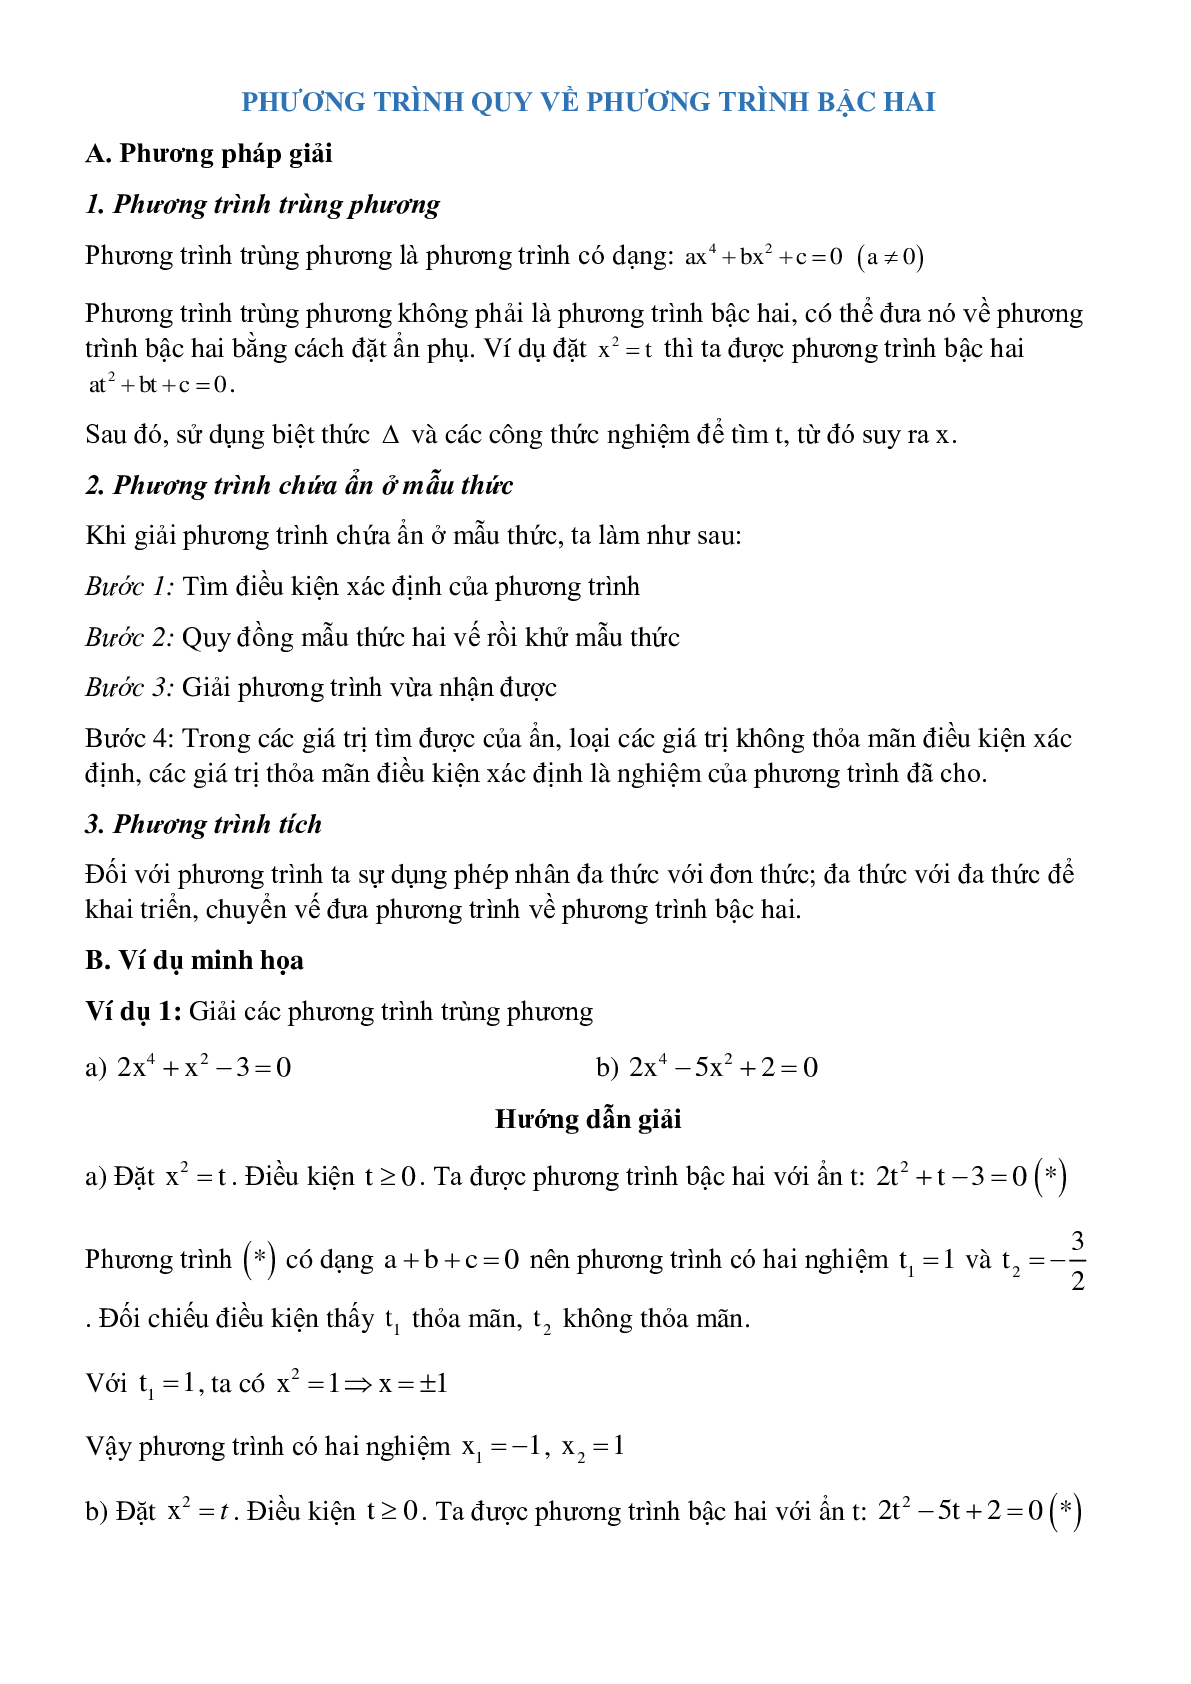 Các dạng phương trình quy về phương trình bậc hai chọn lọc (trang 1)